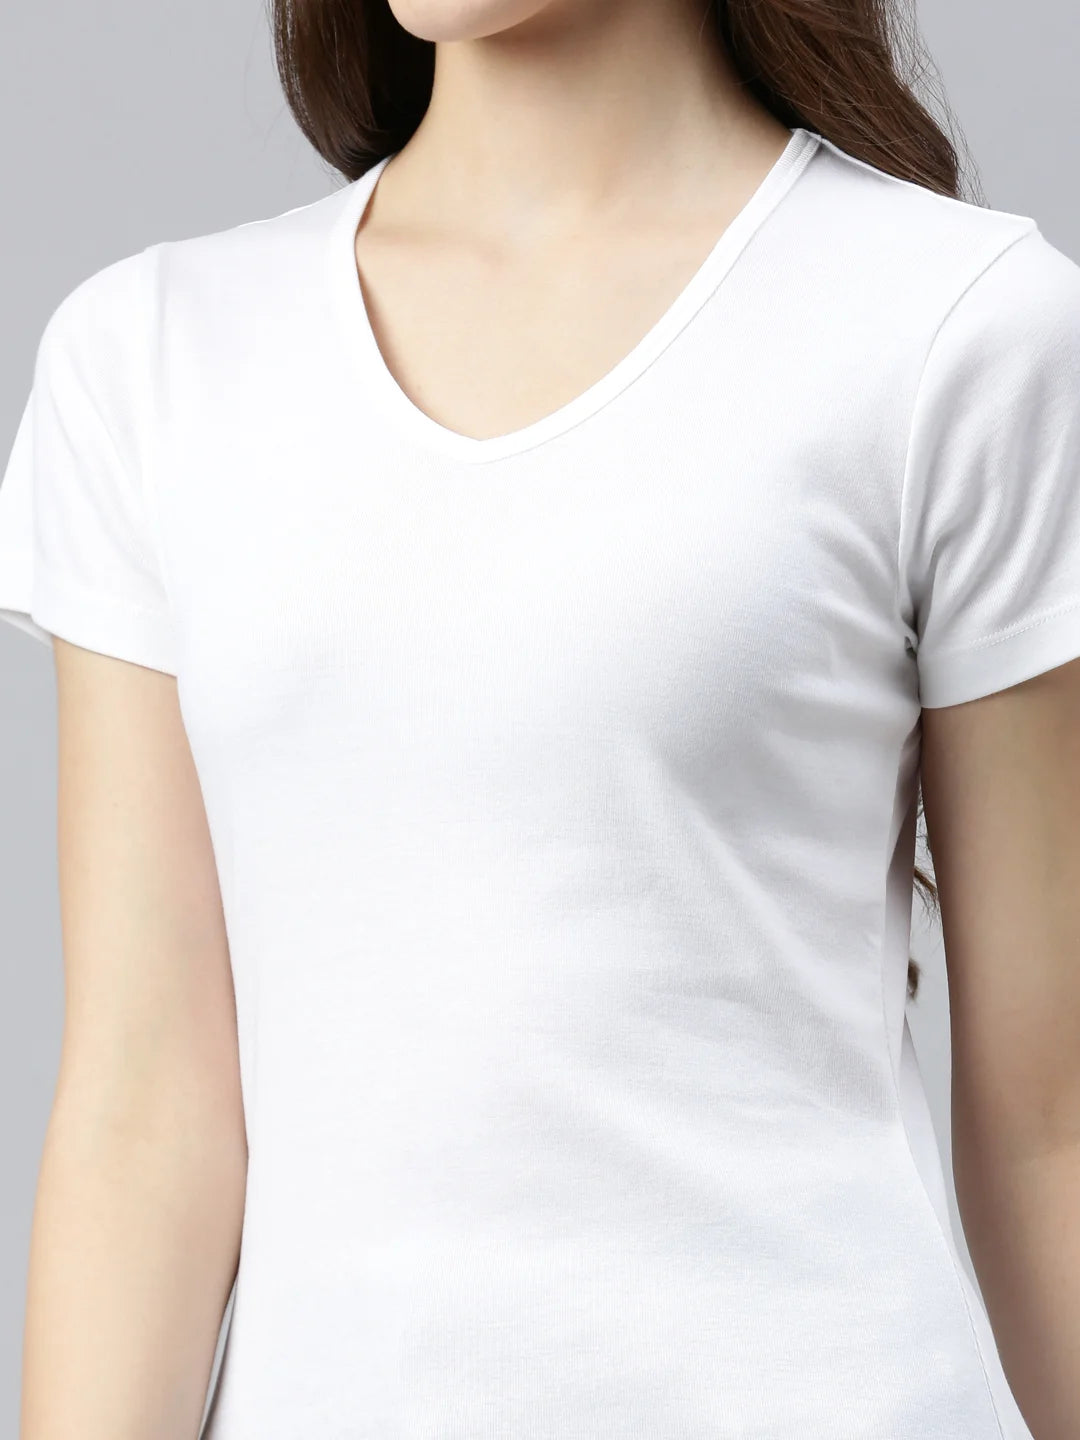 T-shirt col V en coton Efia Femme Blanc Zoom